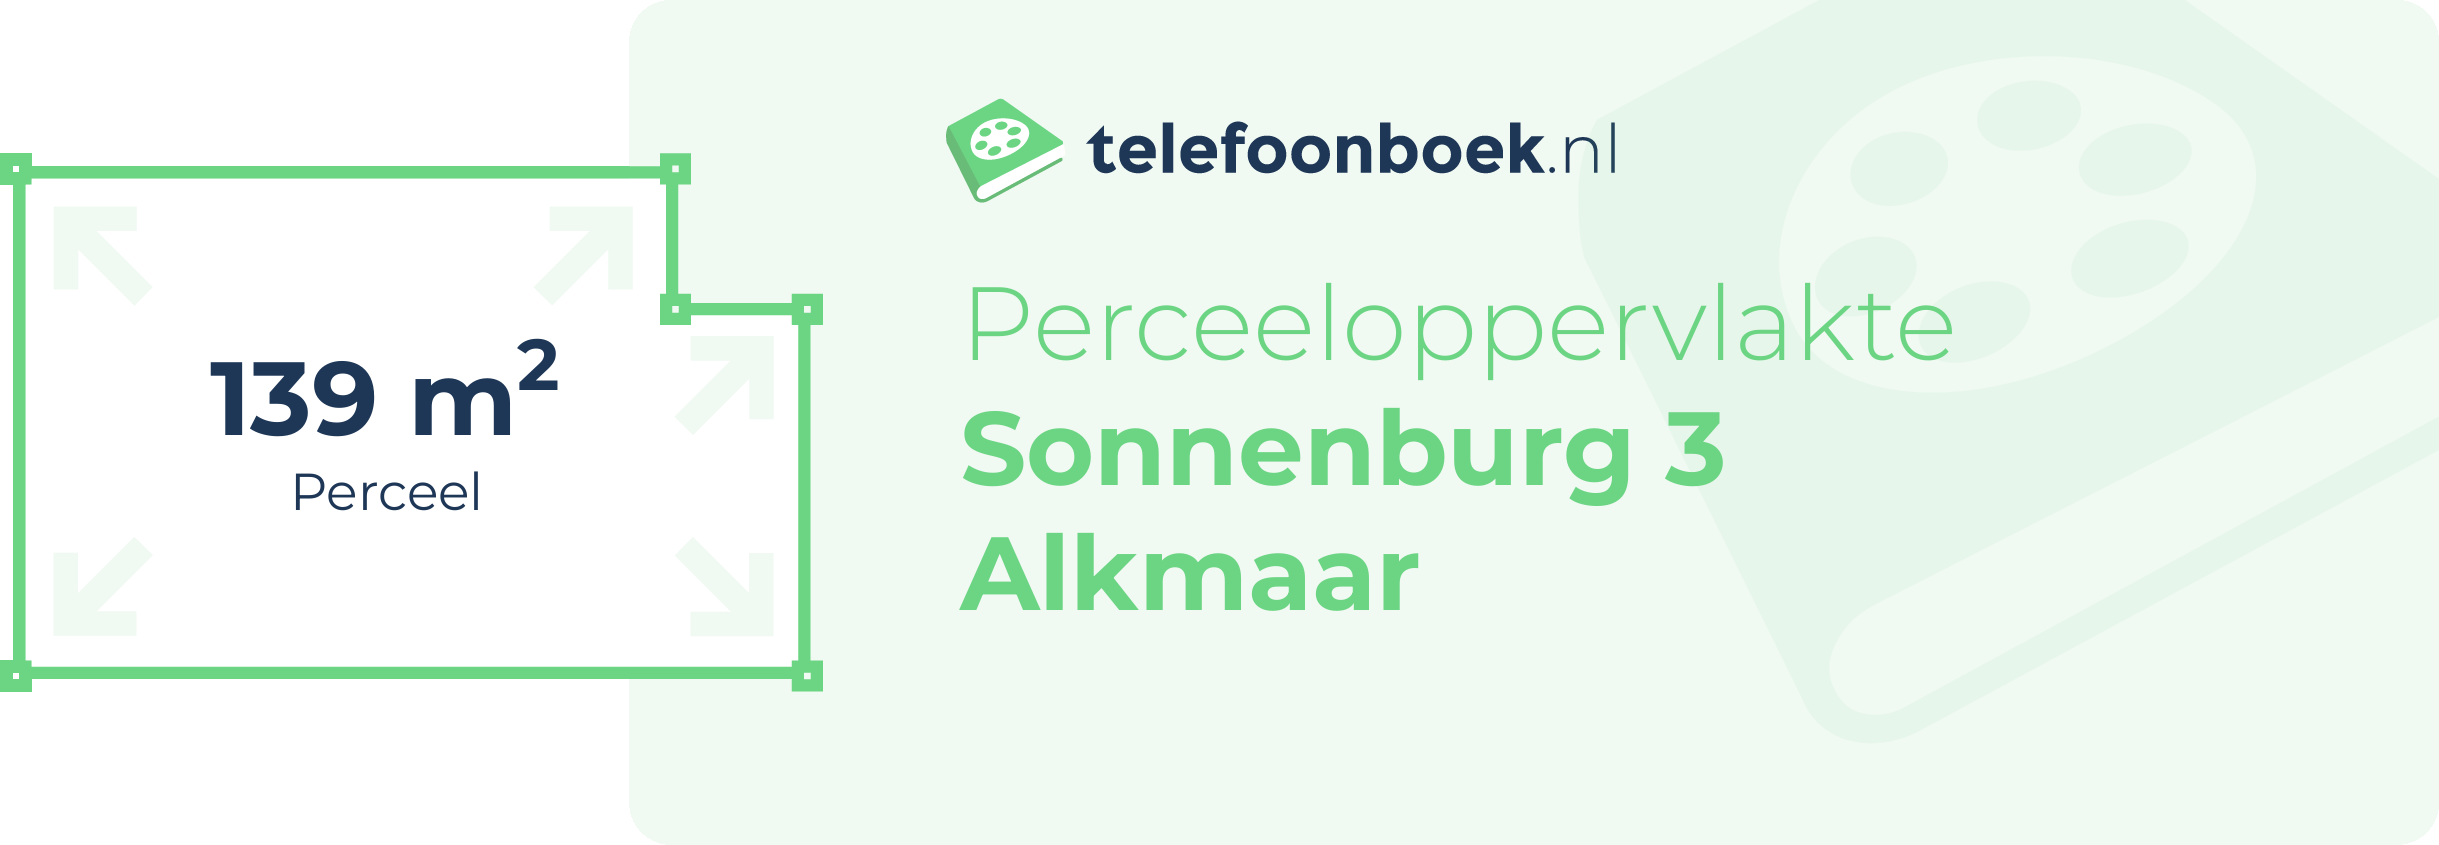 Perceeloppervlakte Sonnenburg 3 Alkmaar